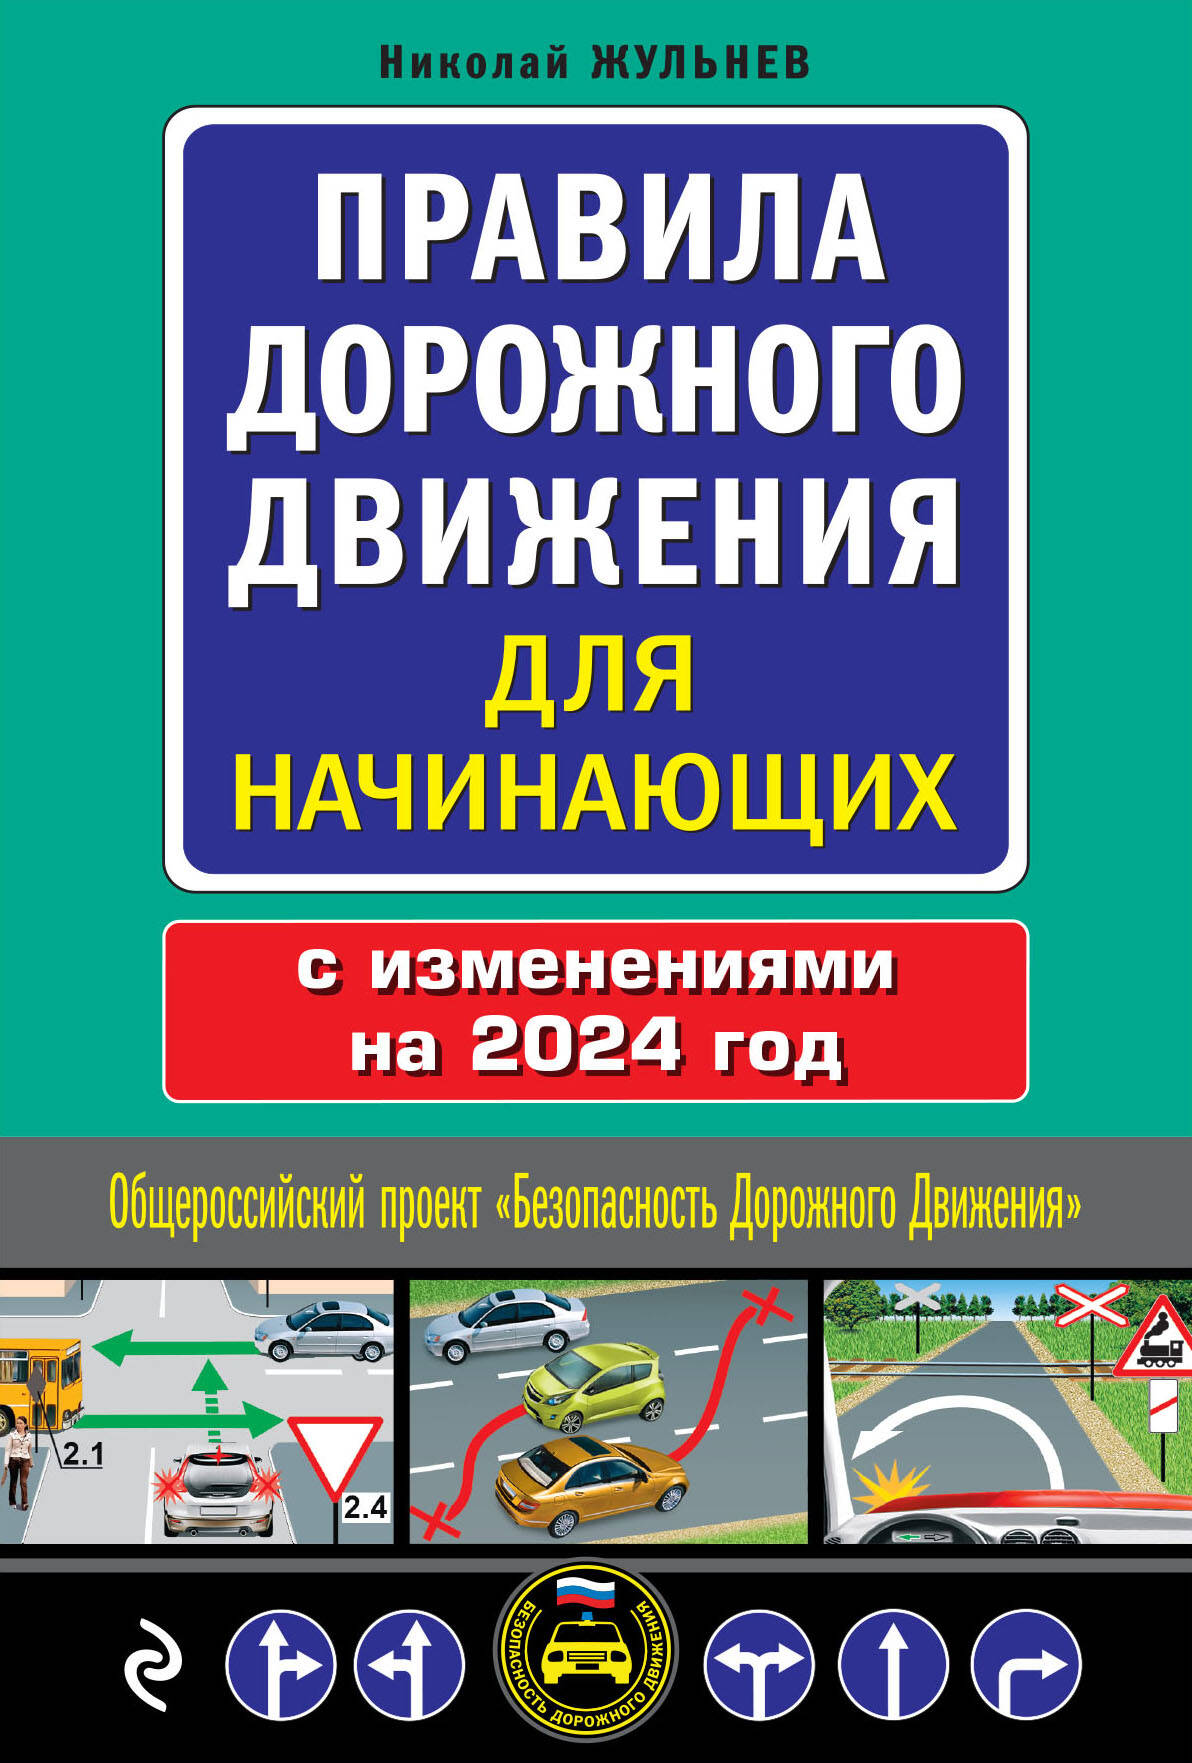 Жульнев Николай Яковлевич Правила дорожного движения для начинающих с изменениями на 2024 год